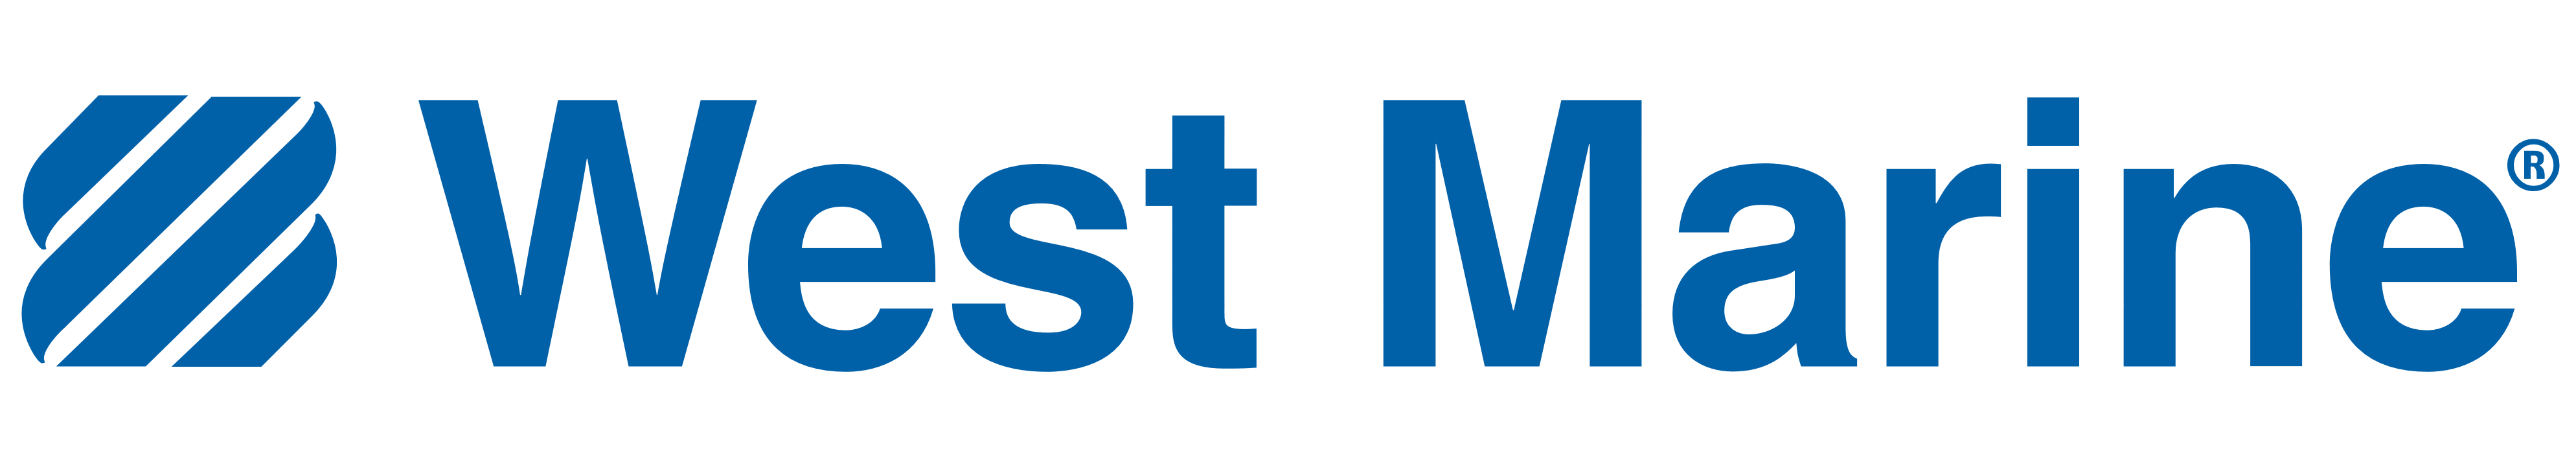 West Marine logo, logotype